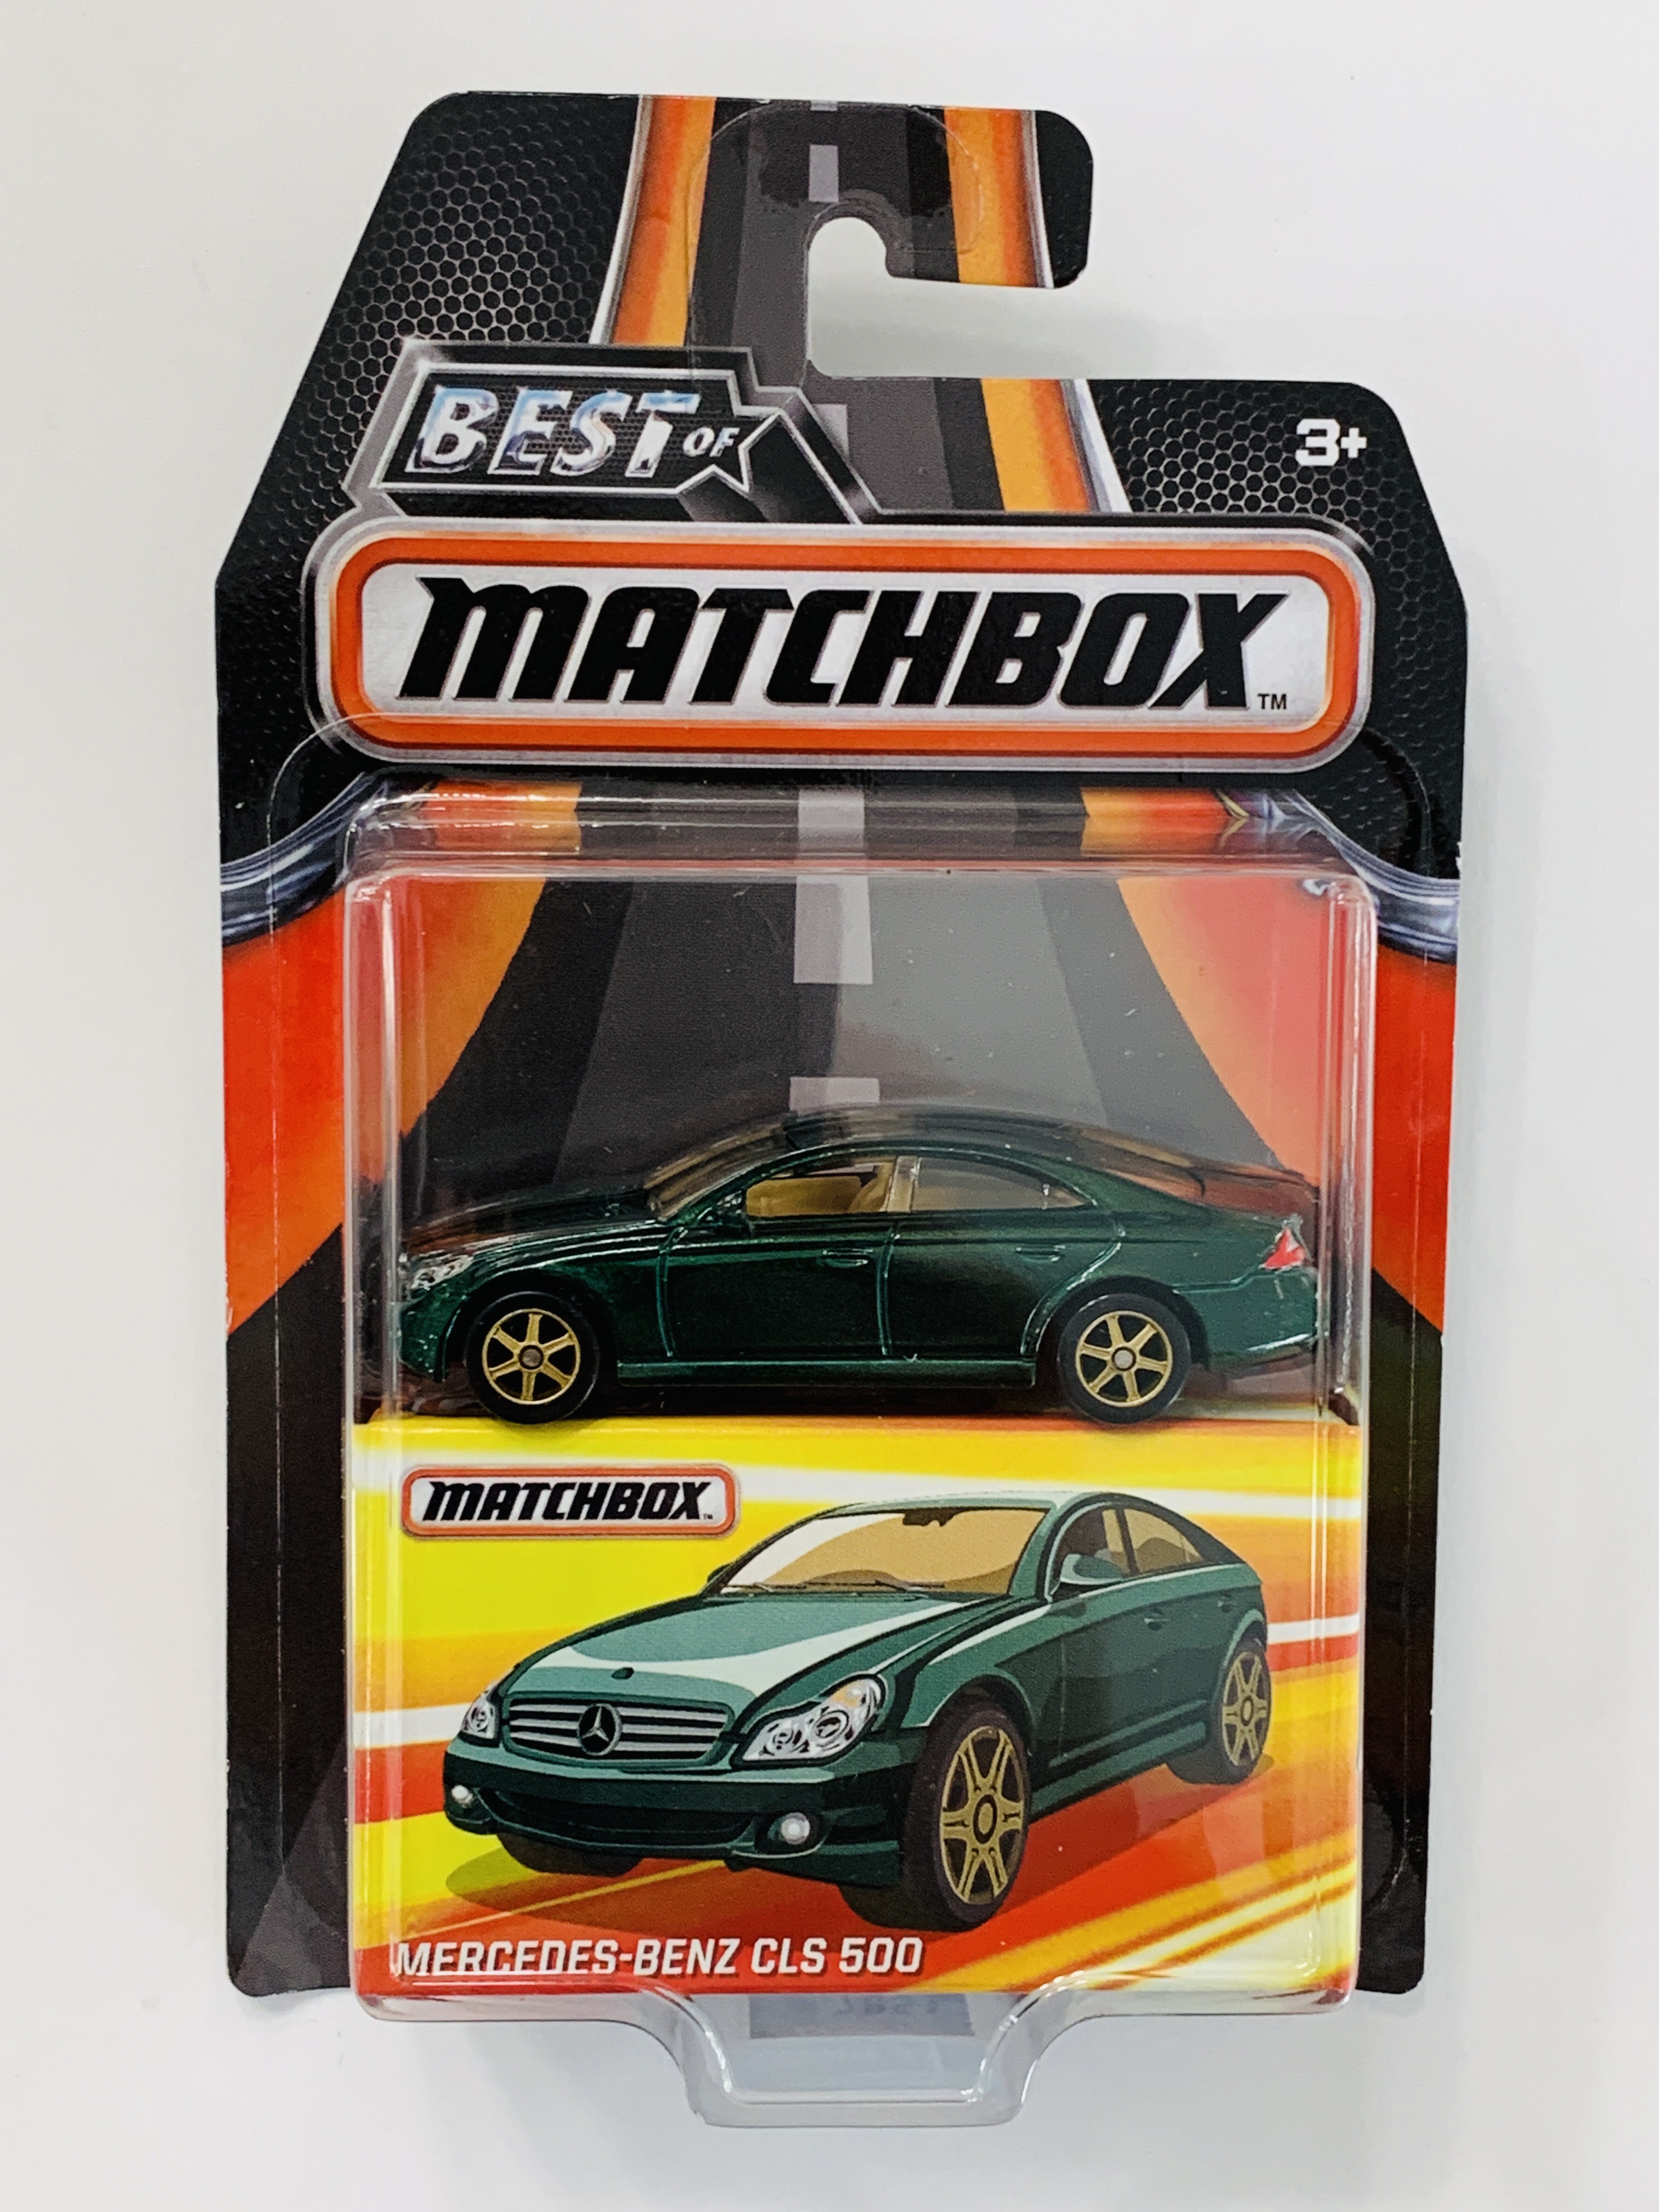 Matchbox Best Of Matchbox Mercedes-Benz CLS 500